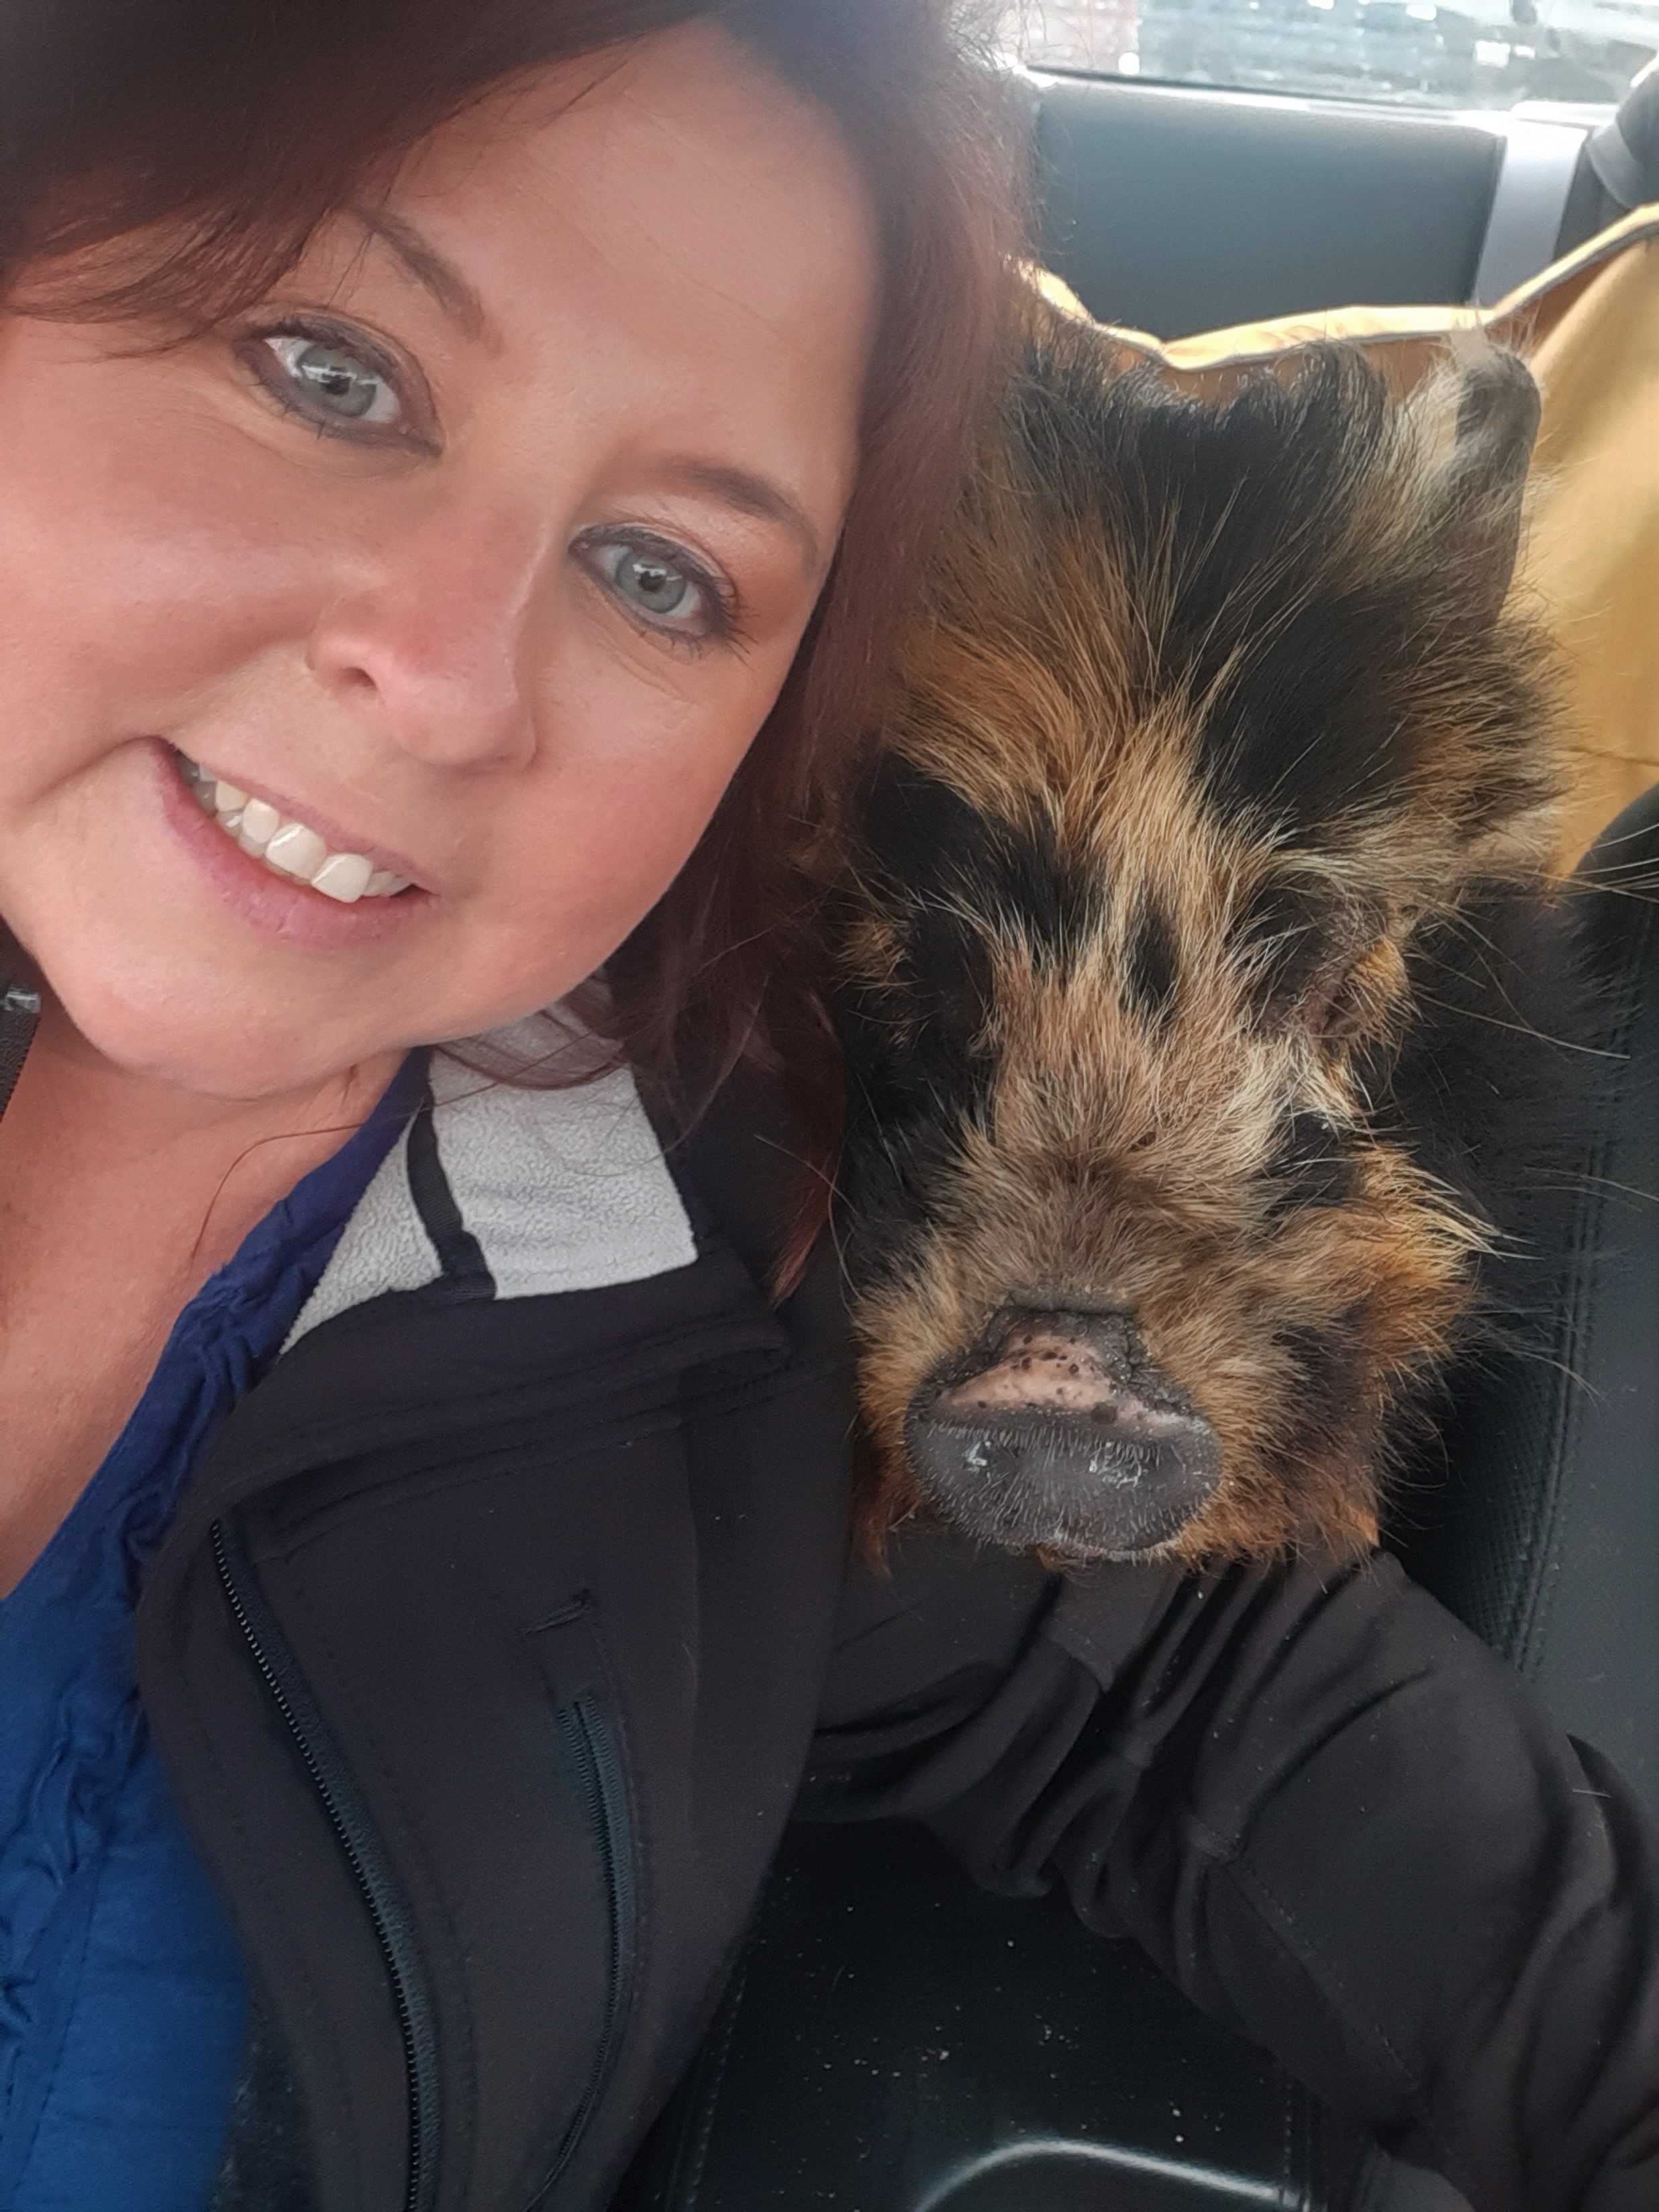 Selfie with pig